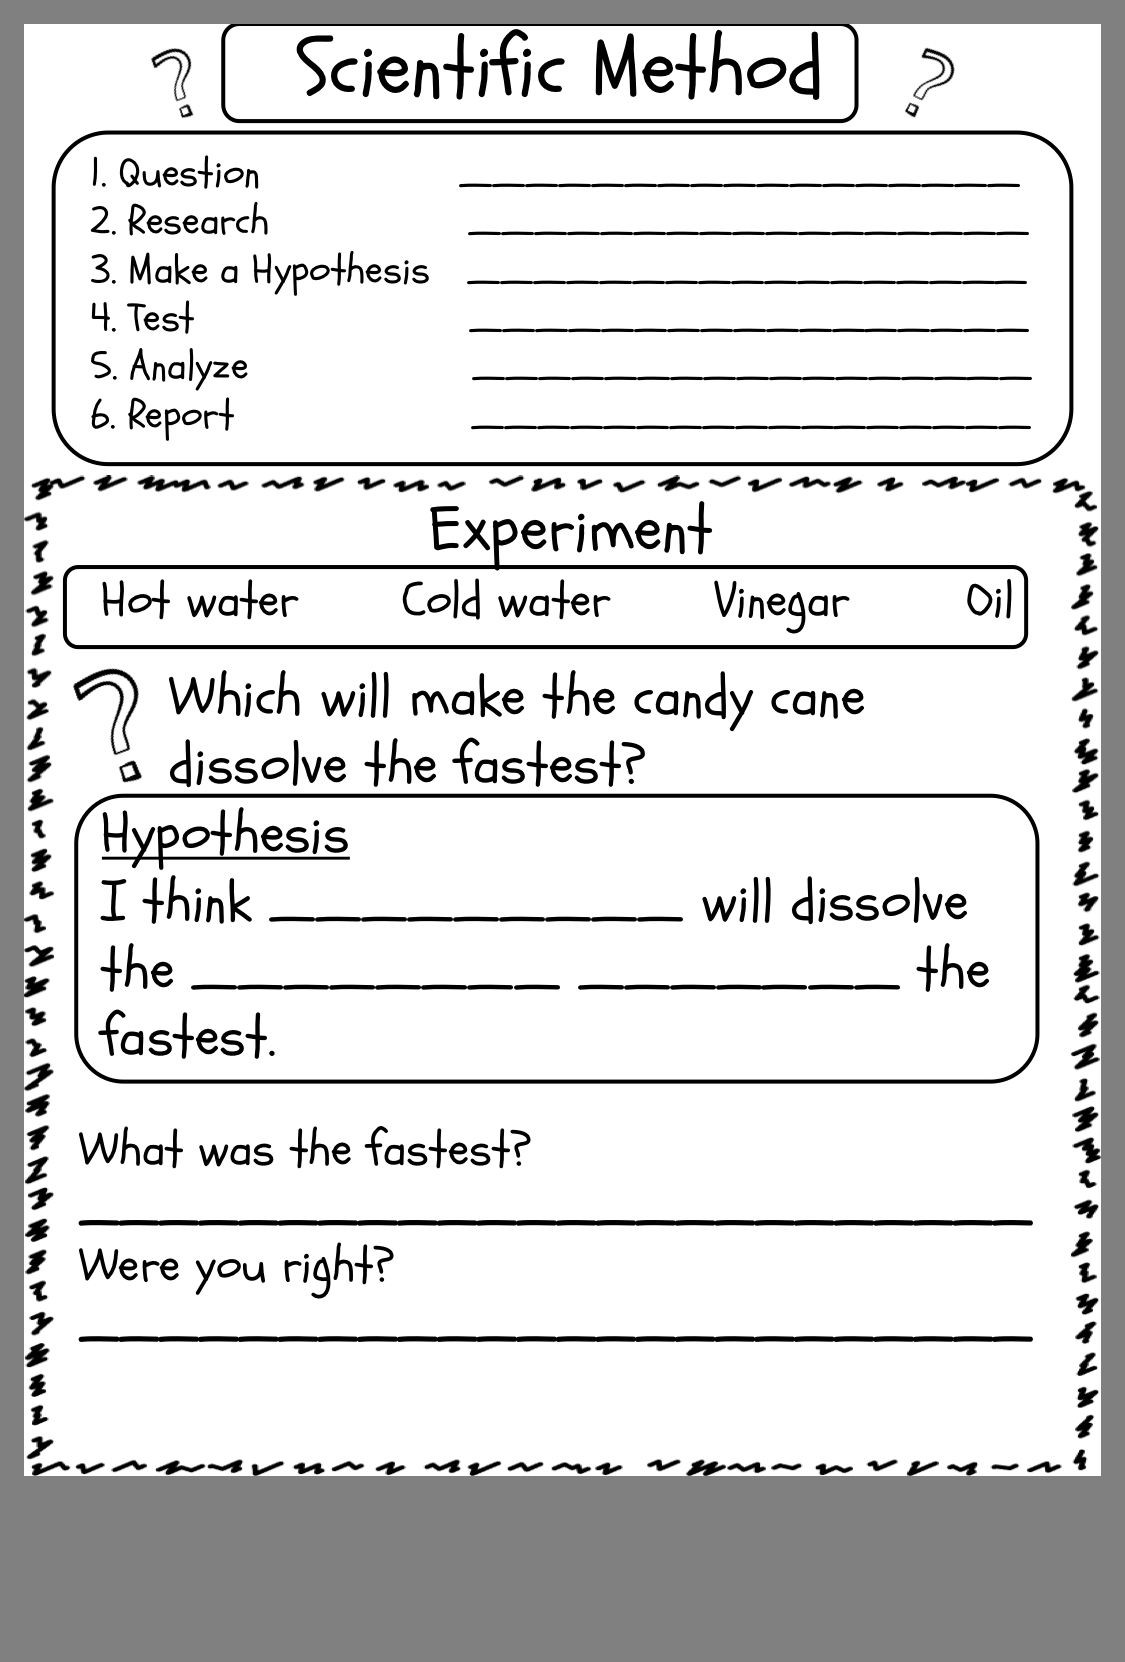 Scientific Method Worksheet Elementary Scientific Method Experiment Worksheet